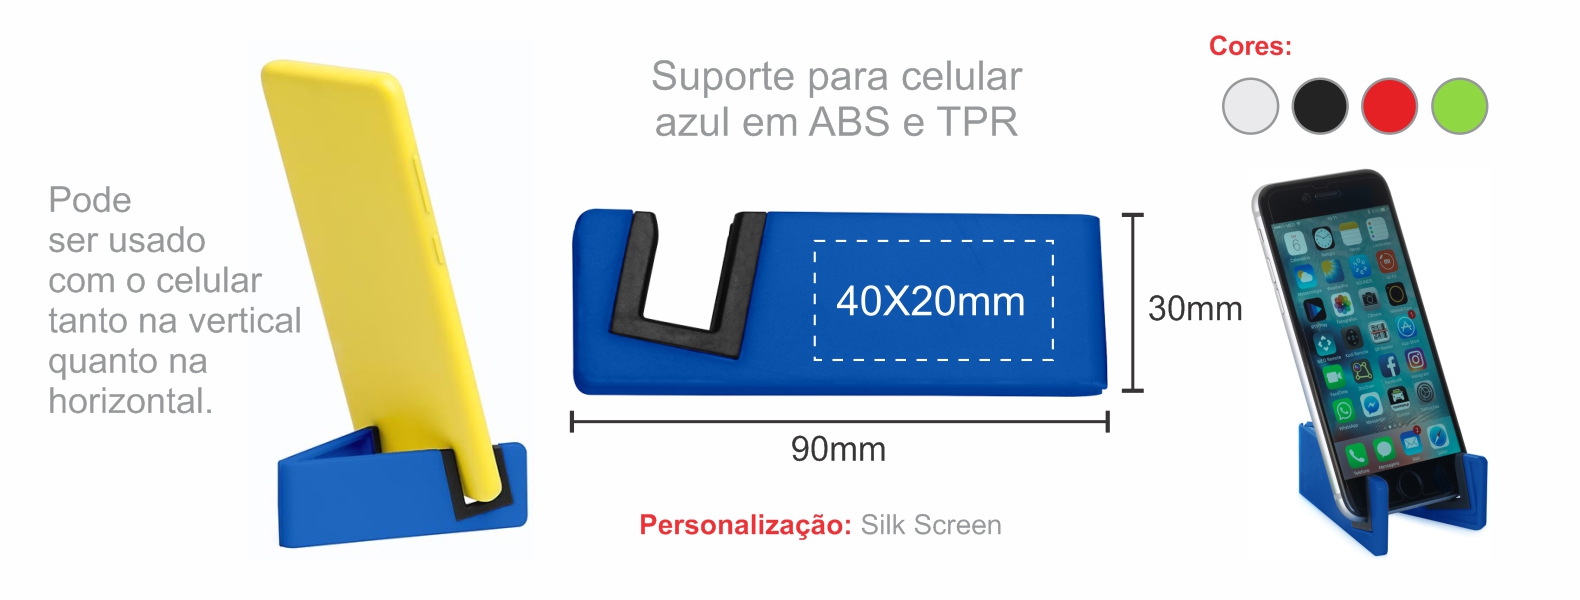 Suporte para celular azul em ABS e TPR. Pode ser usado com o celular tanto na vertical quanto na horizontal. Disponível nas cores: branco, preto, azul, vermelho e verde.